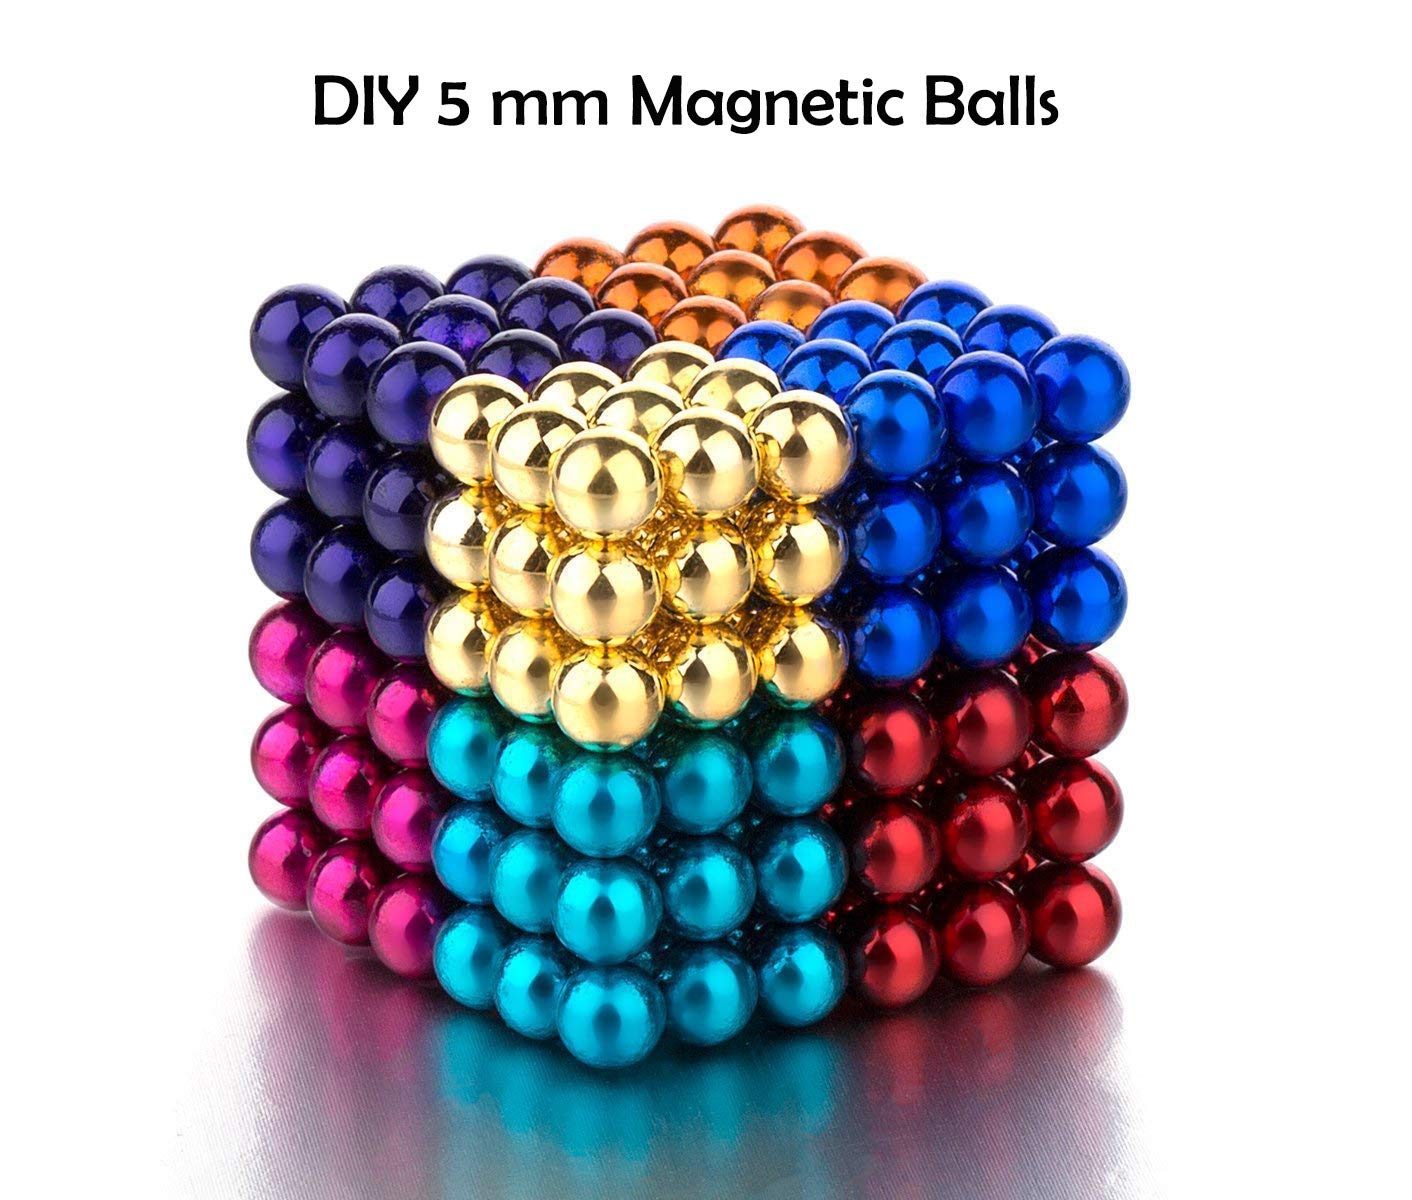 Brig spids New Zealand Buy Magnet Balls - 216 Pcs of Multi-Color 5mm Magnet Balls Online - Ma –  Magneticks